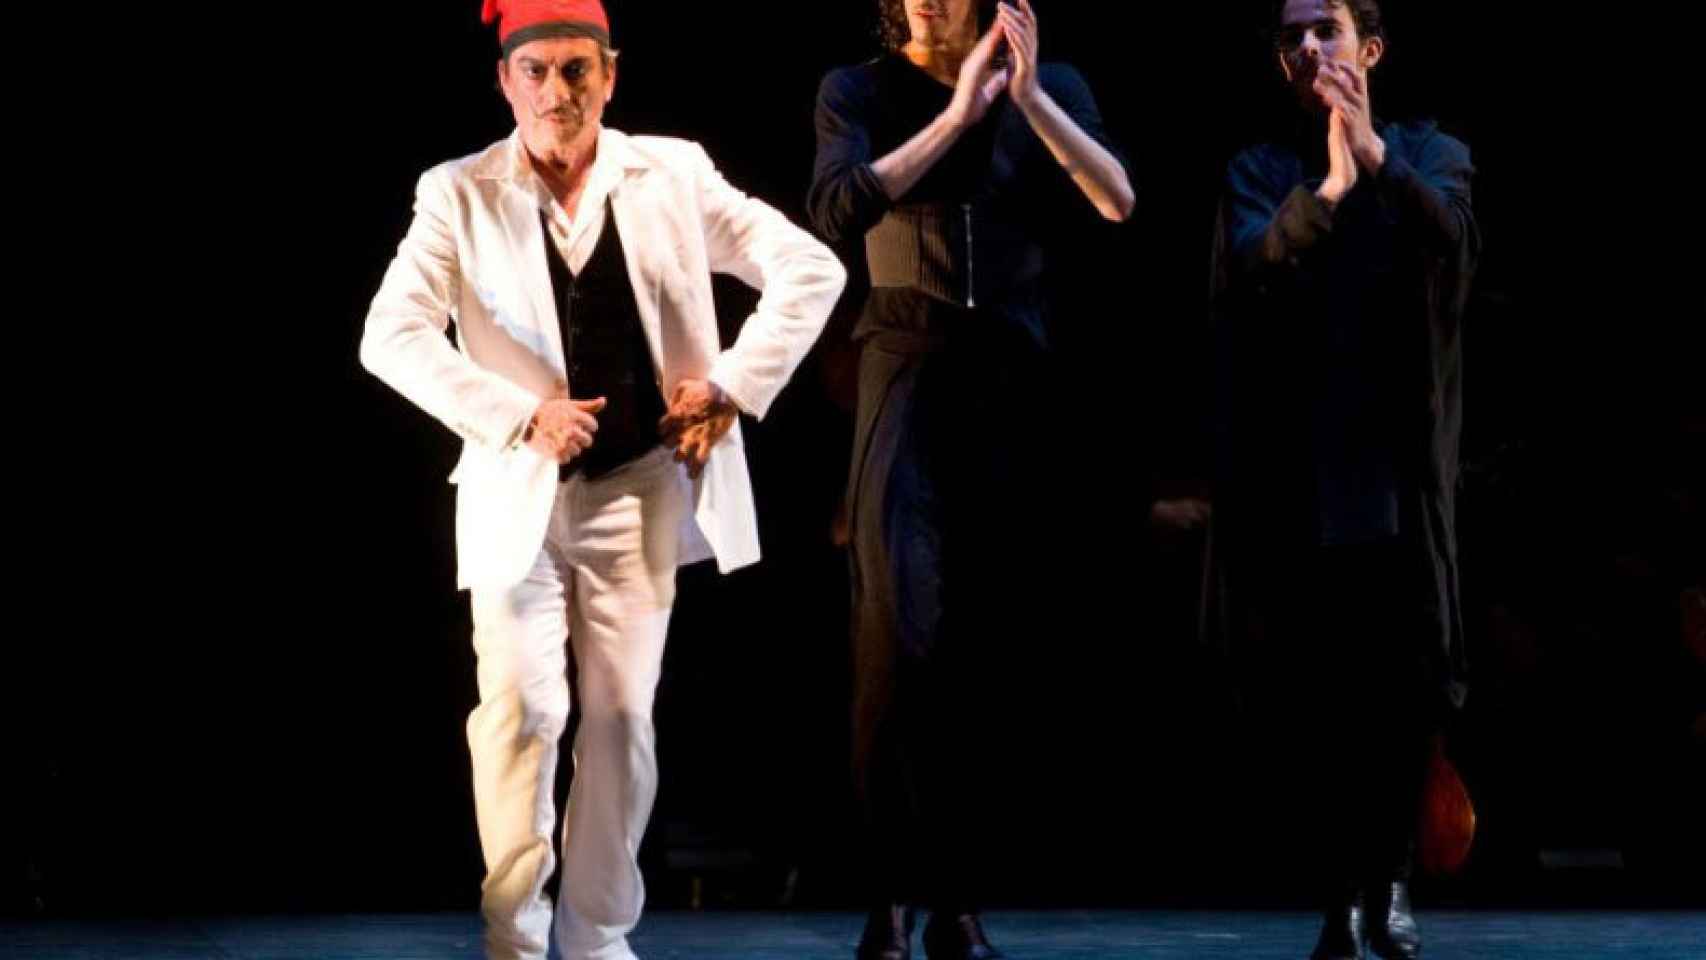 Image: Goyo Montero Morell y Javier Latorre, Premios Nacionales de Danza 2011